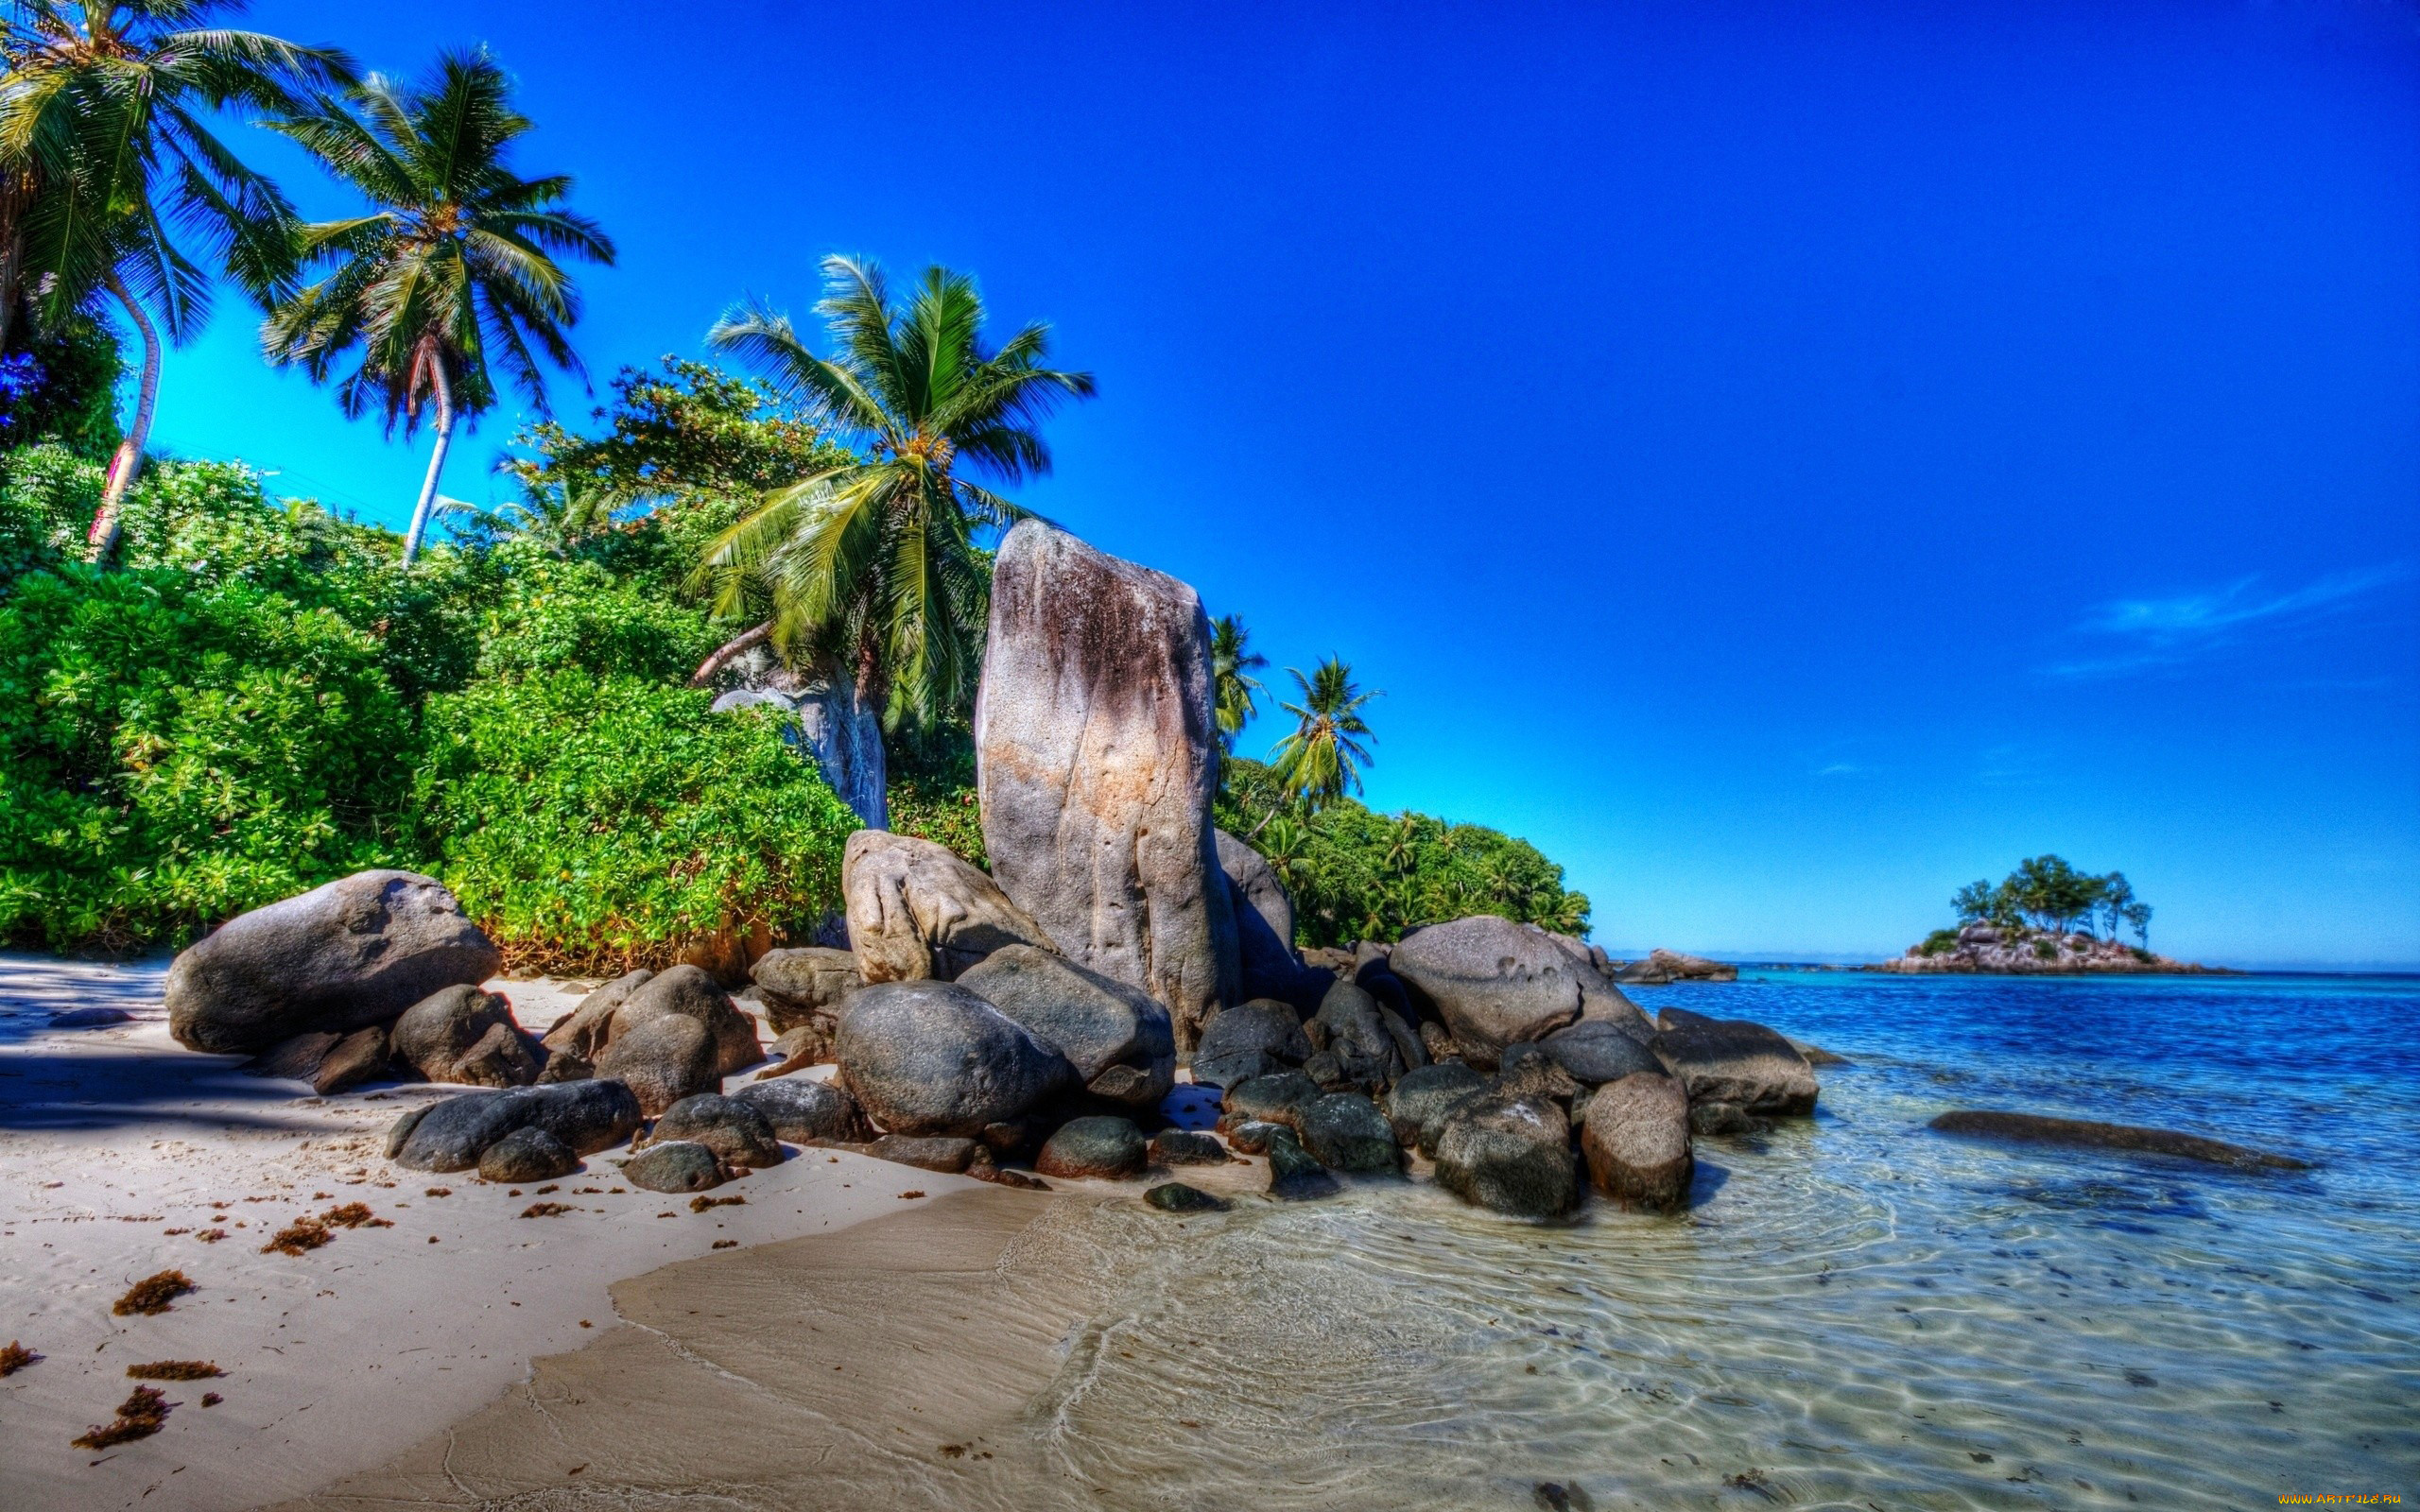 Изображения на рабочий стол компьютера. Anse Royale Сейшелы. Парадиз остров Карибского моря. Природа море. Тропический пляж.